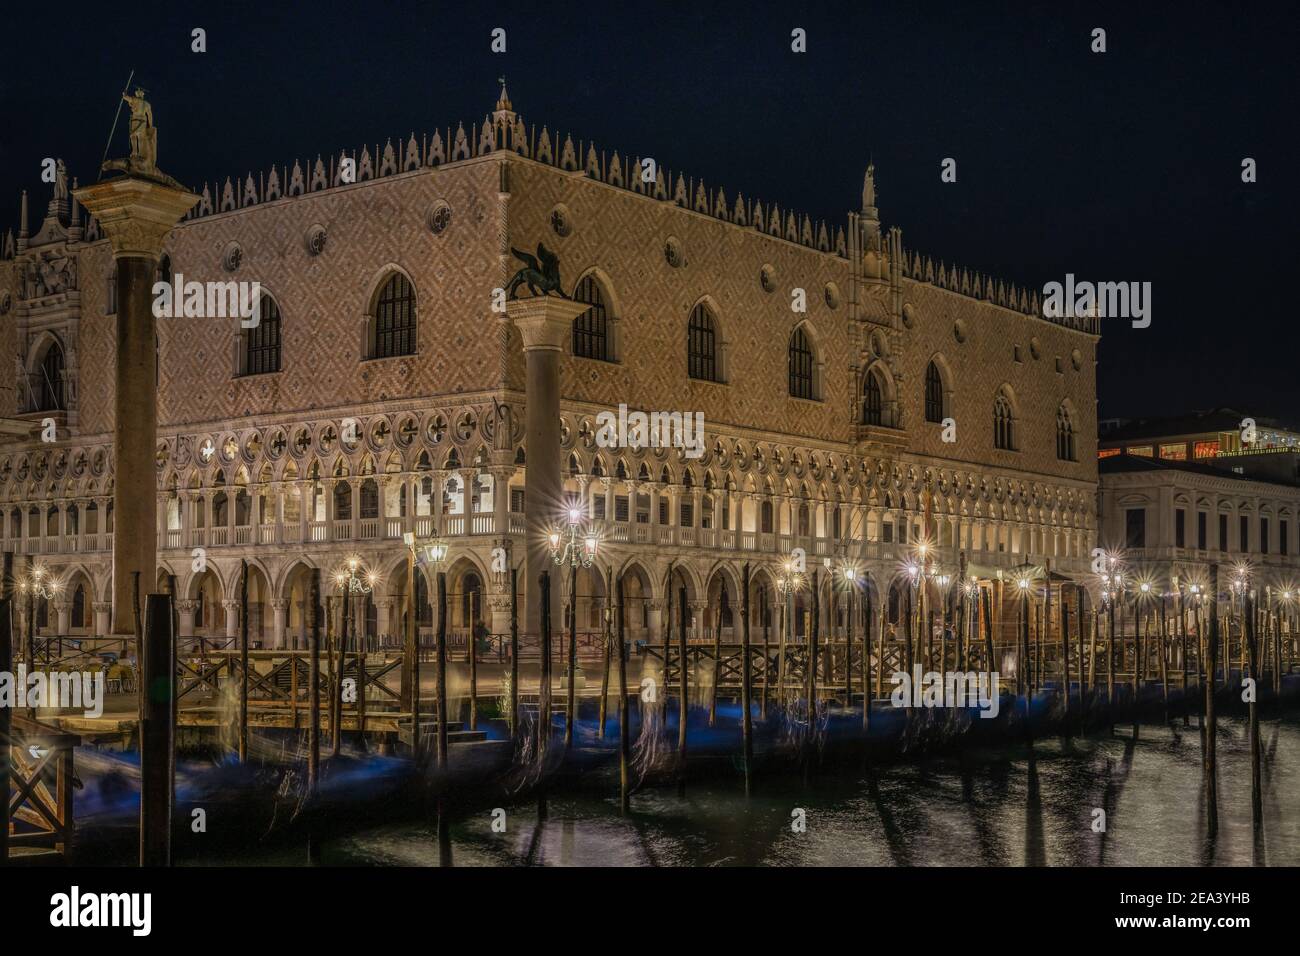 Vista panoramica notturna del Palazzo Ducale e di Piazza San Marco illuminata, Venezia, Italia Foto Stock